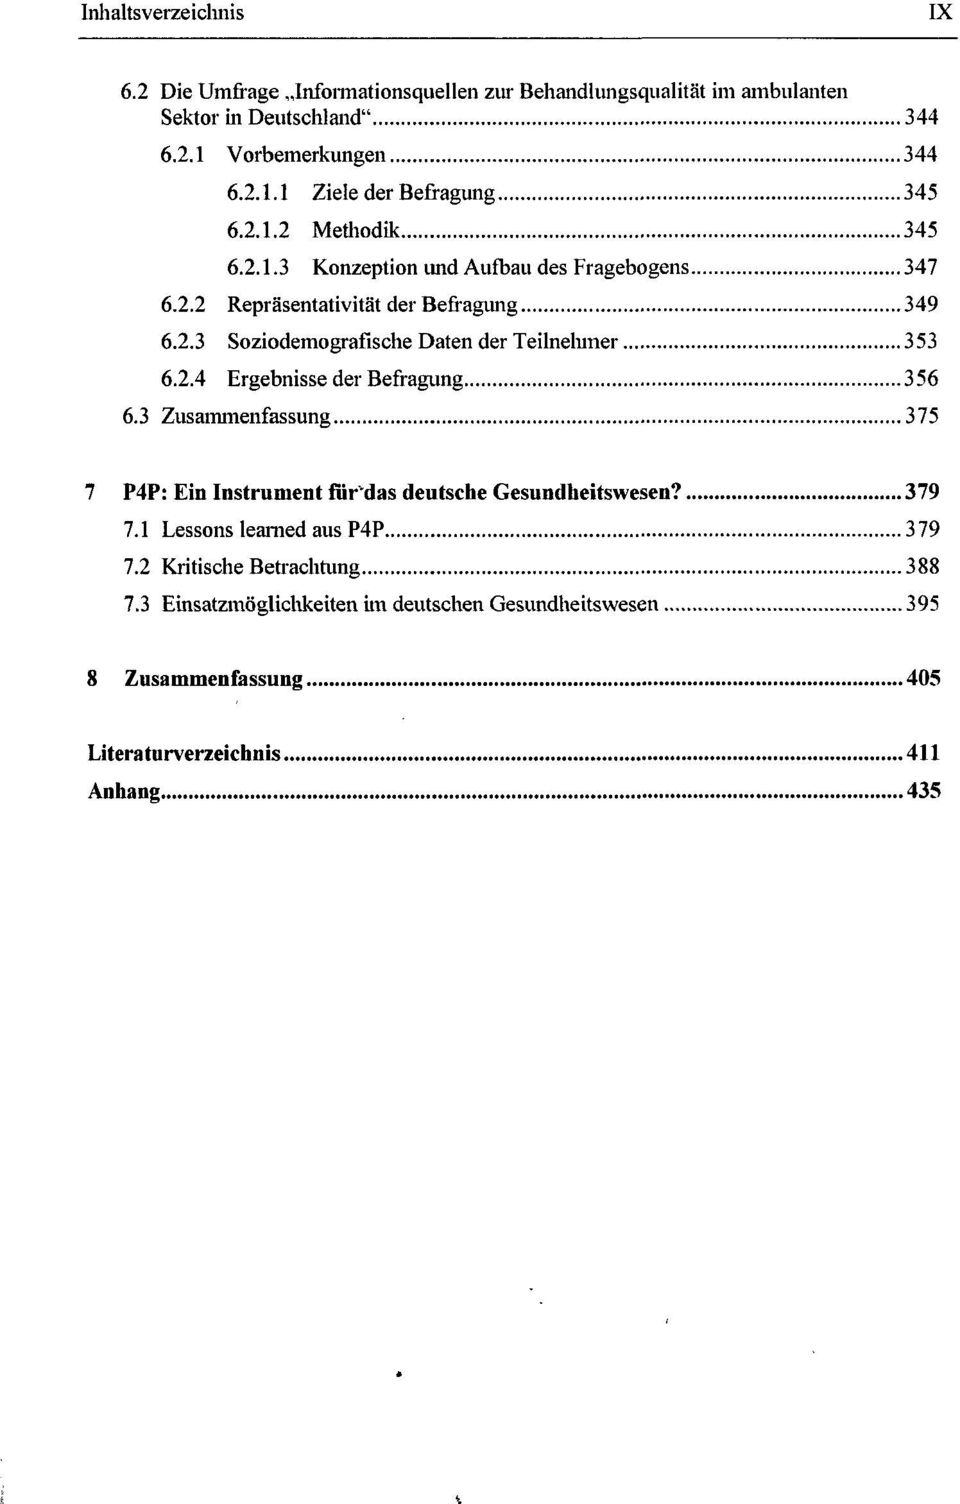 2.4 Ergebnisse der Befragung 356 6.3 Zusammenfassung 375 7 P4P: Ein Instrument für das deutsche Gesundheitswesen? 379 7.1 Lessons learned aus P4P 379 7.